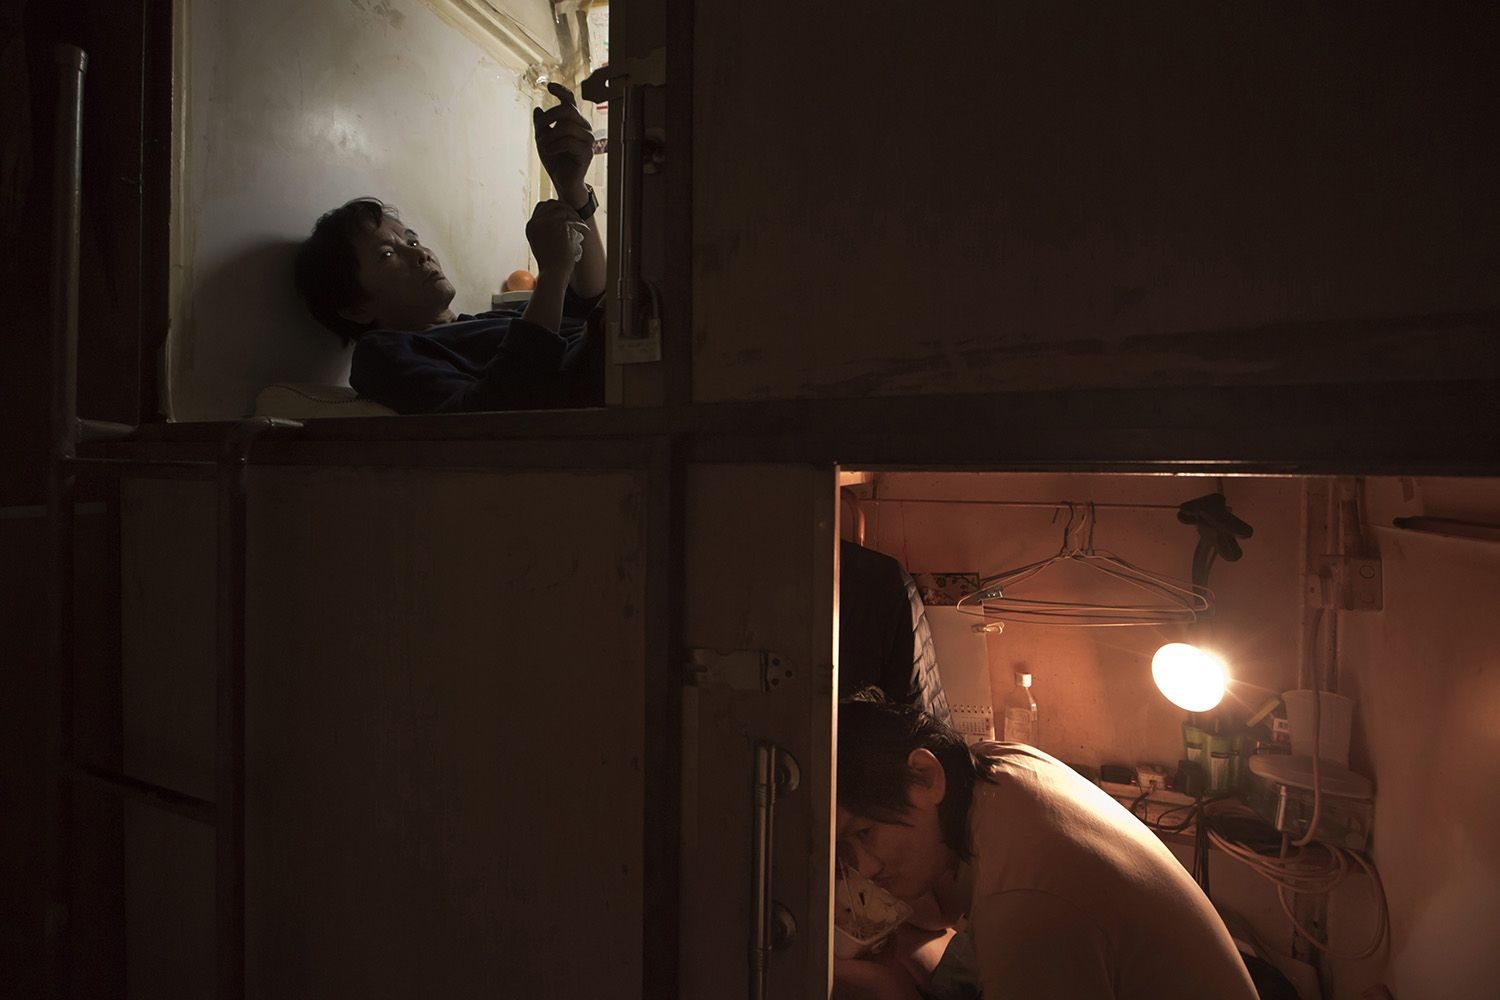 Ám ảnh cuộc sống của cư dân nghèo trong nhà “quan tài” tại Hồng Kông - 6